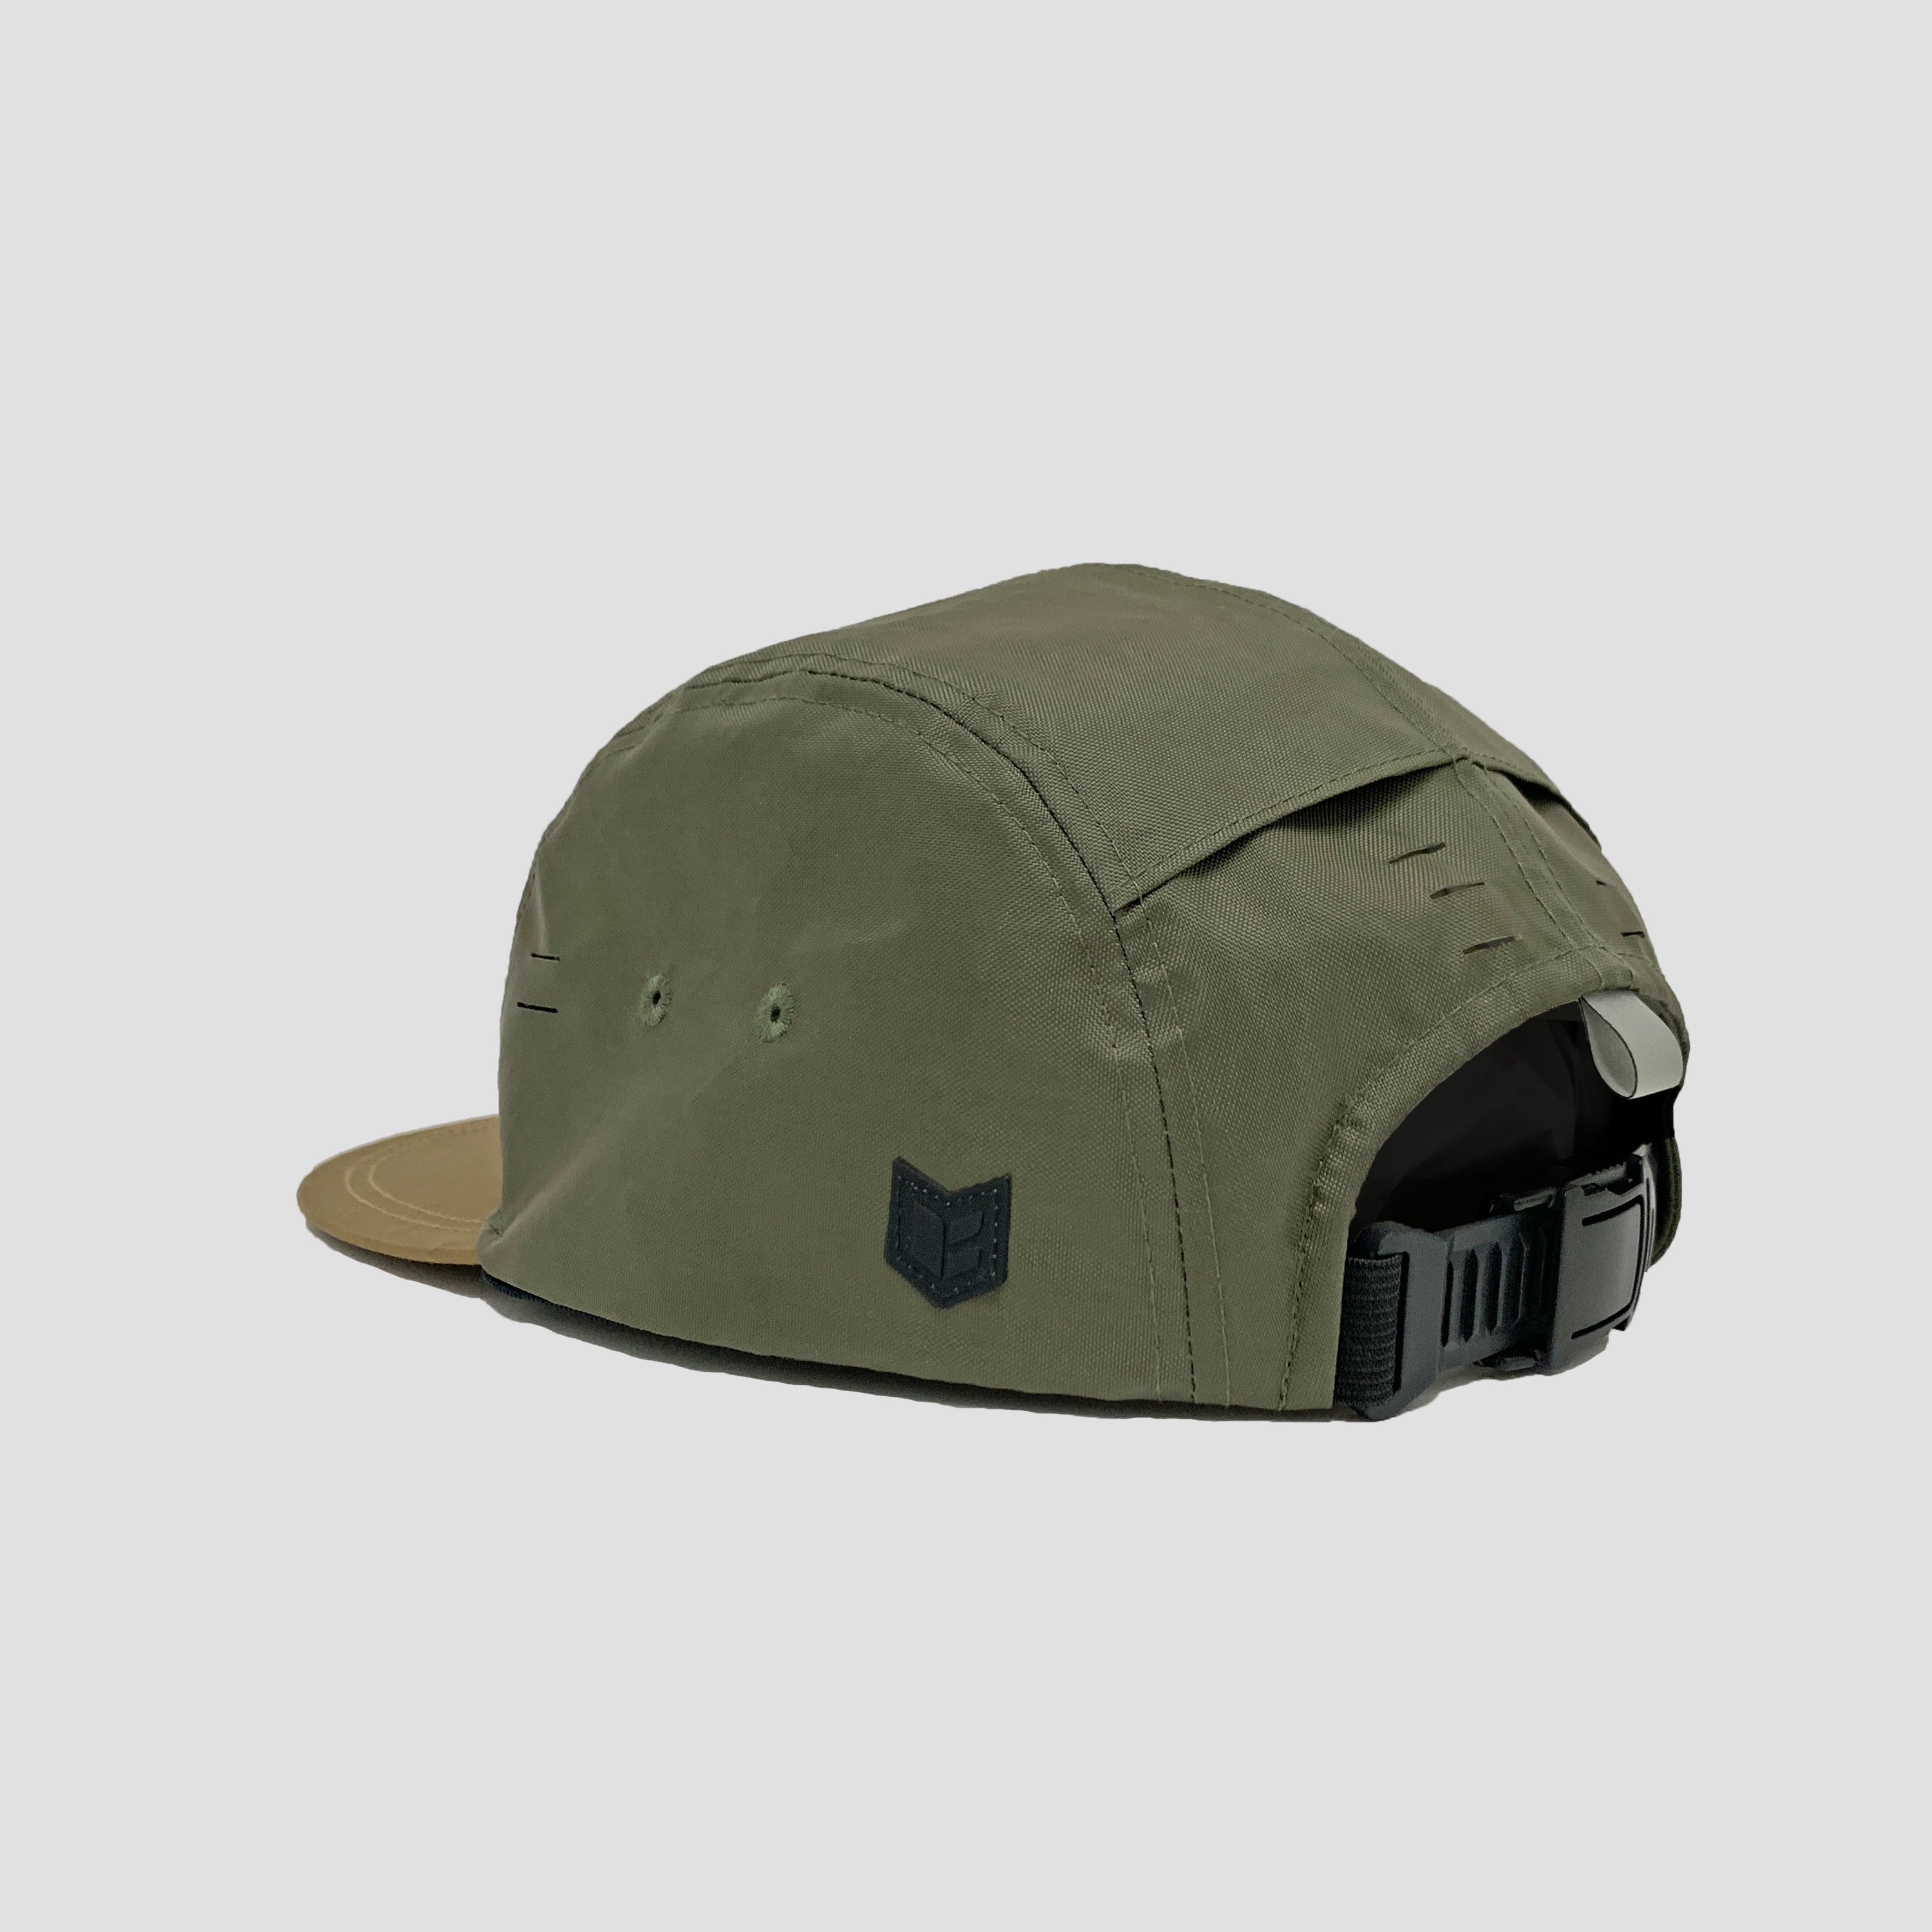 BASI[X] CAMPER HAT